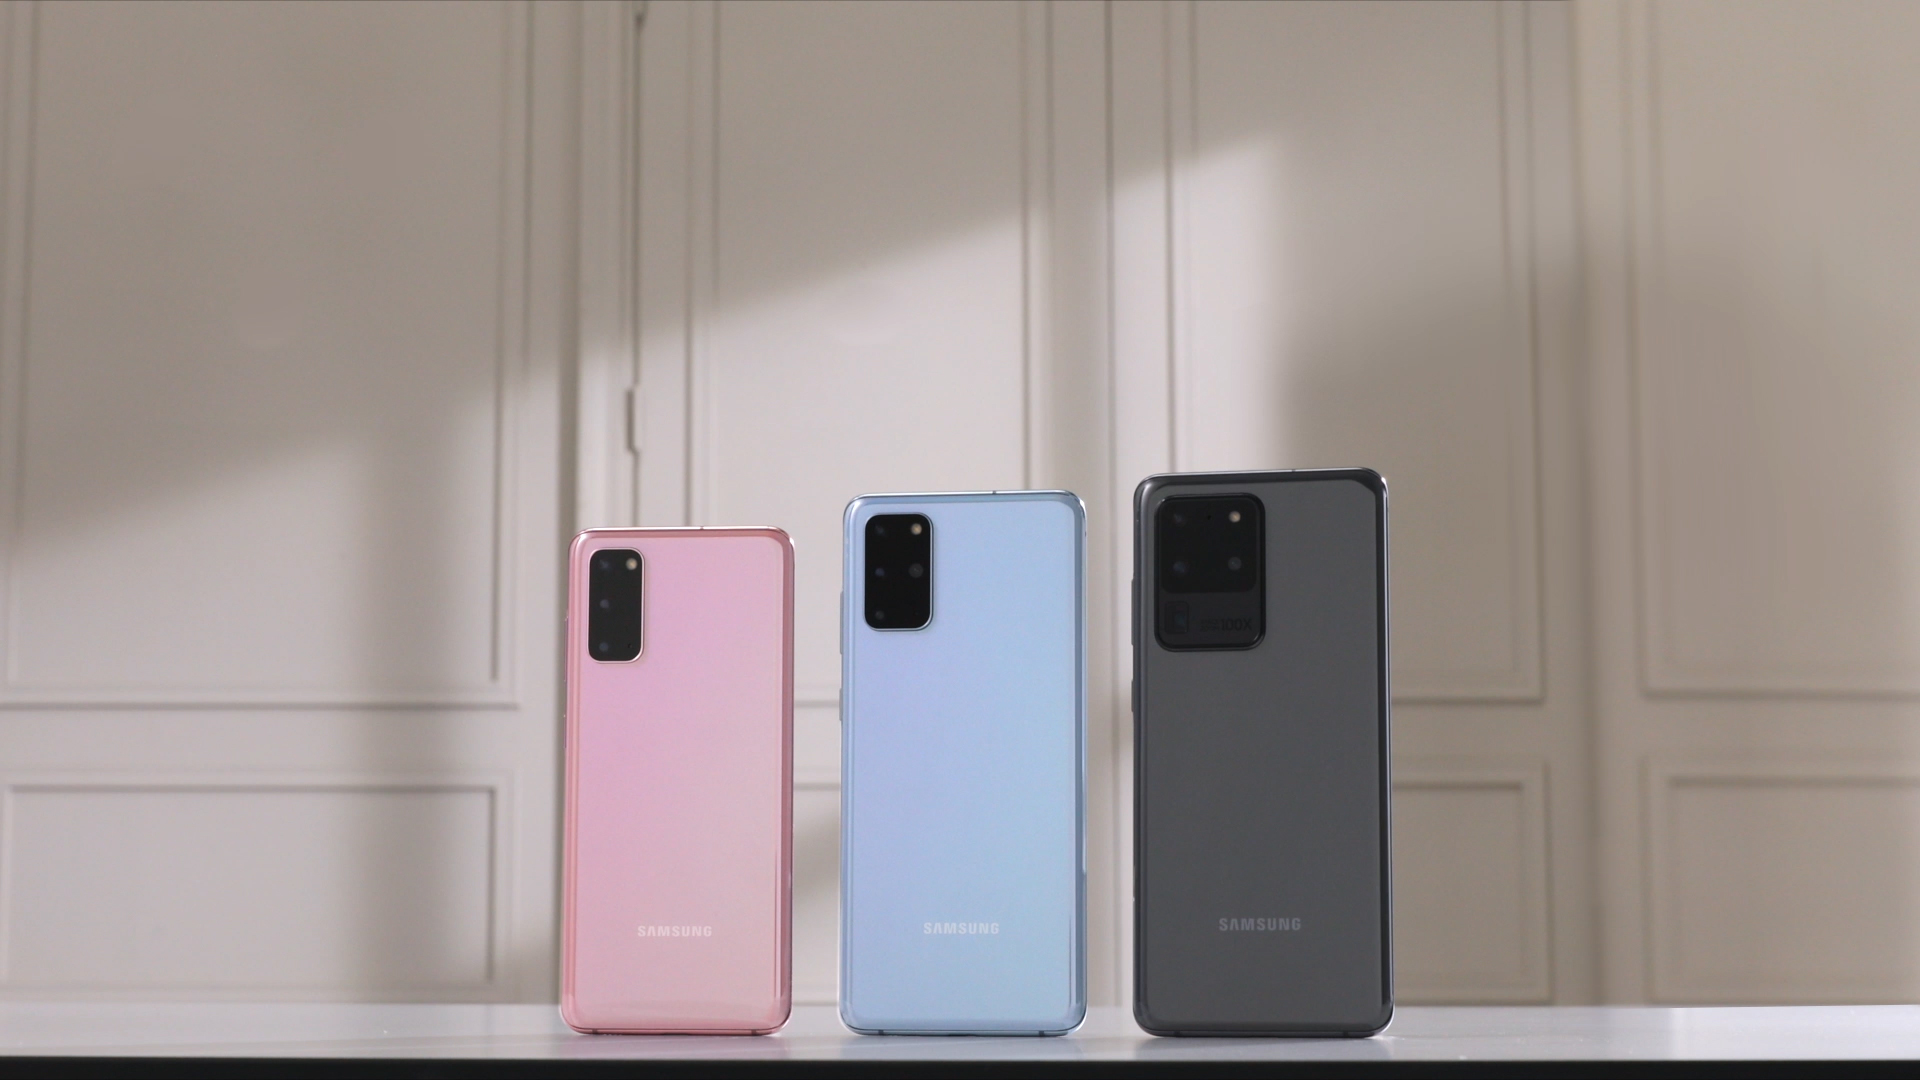 Dakle, Samsung je osvježio svoju S liniju mobitela, koja se, umjesto S11 (prethodnici su bili S10), zove S20. Samsungu je očito bilo zgodnije u 2020. godini imati seriju s brojem 20 u imenu. Predstavili su tri modela; manji i veći S20, te 20 Ultra, koji im je u vrhu ponude. No, uz S seriju, izbacili su i dugoočekivani sklopivi mobitel, Galaxy Z Flip, koji ne dijeli previše karakteristika s prvim (i problematičnim) Galaxy Foldom.